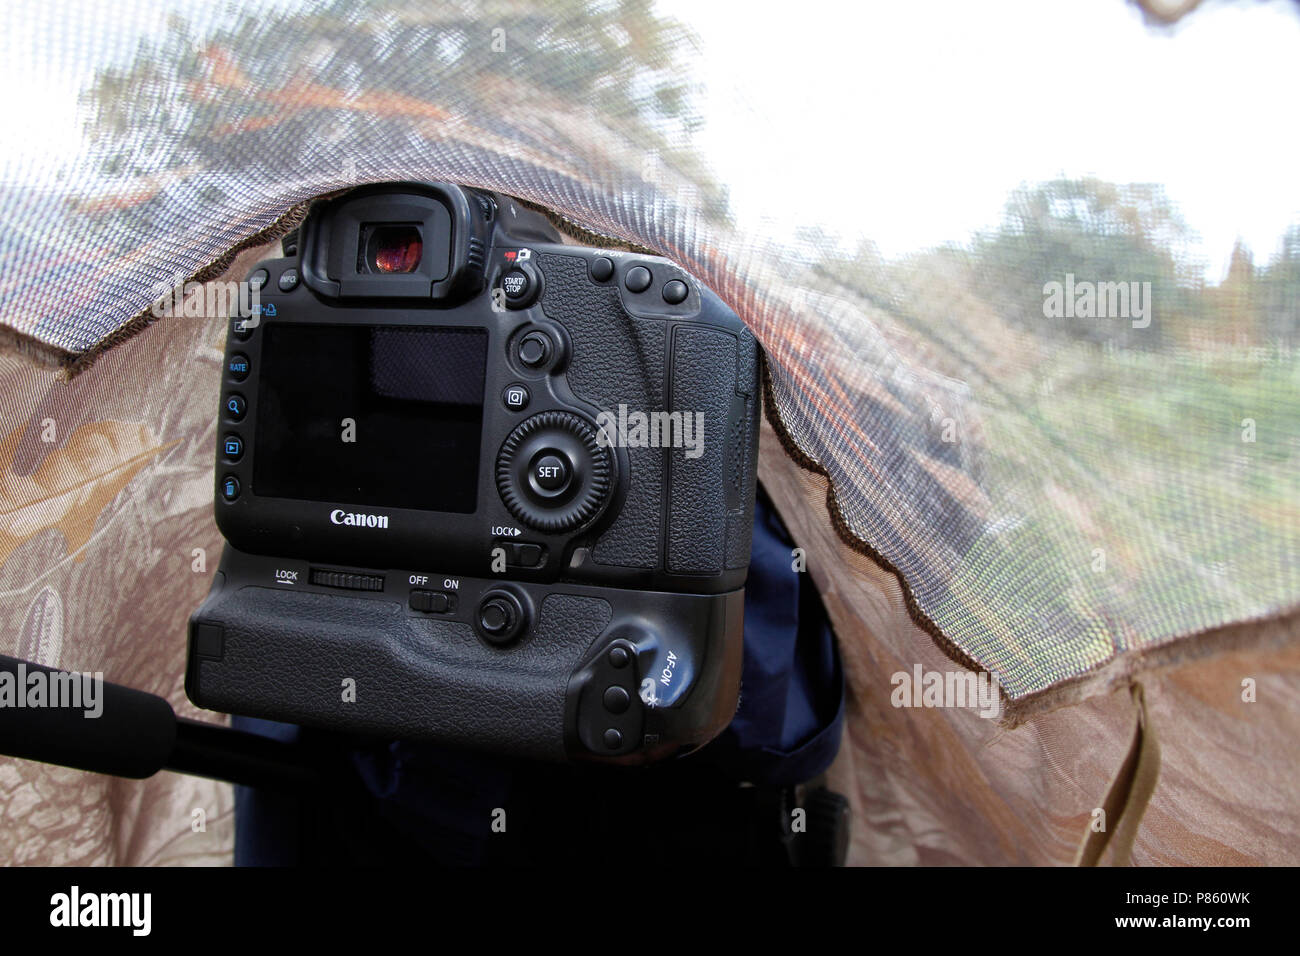 camera onder een burka Stock Photo